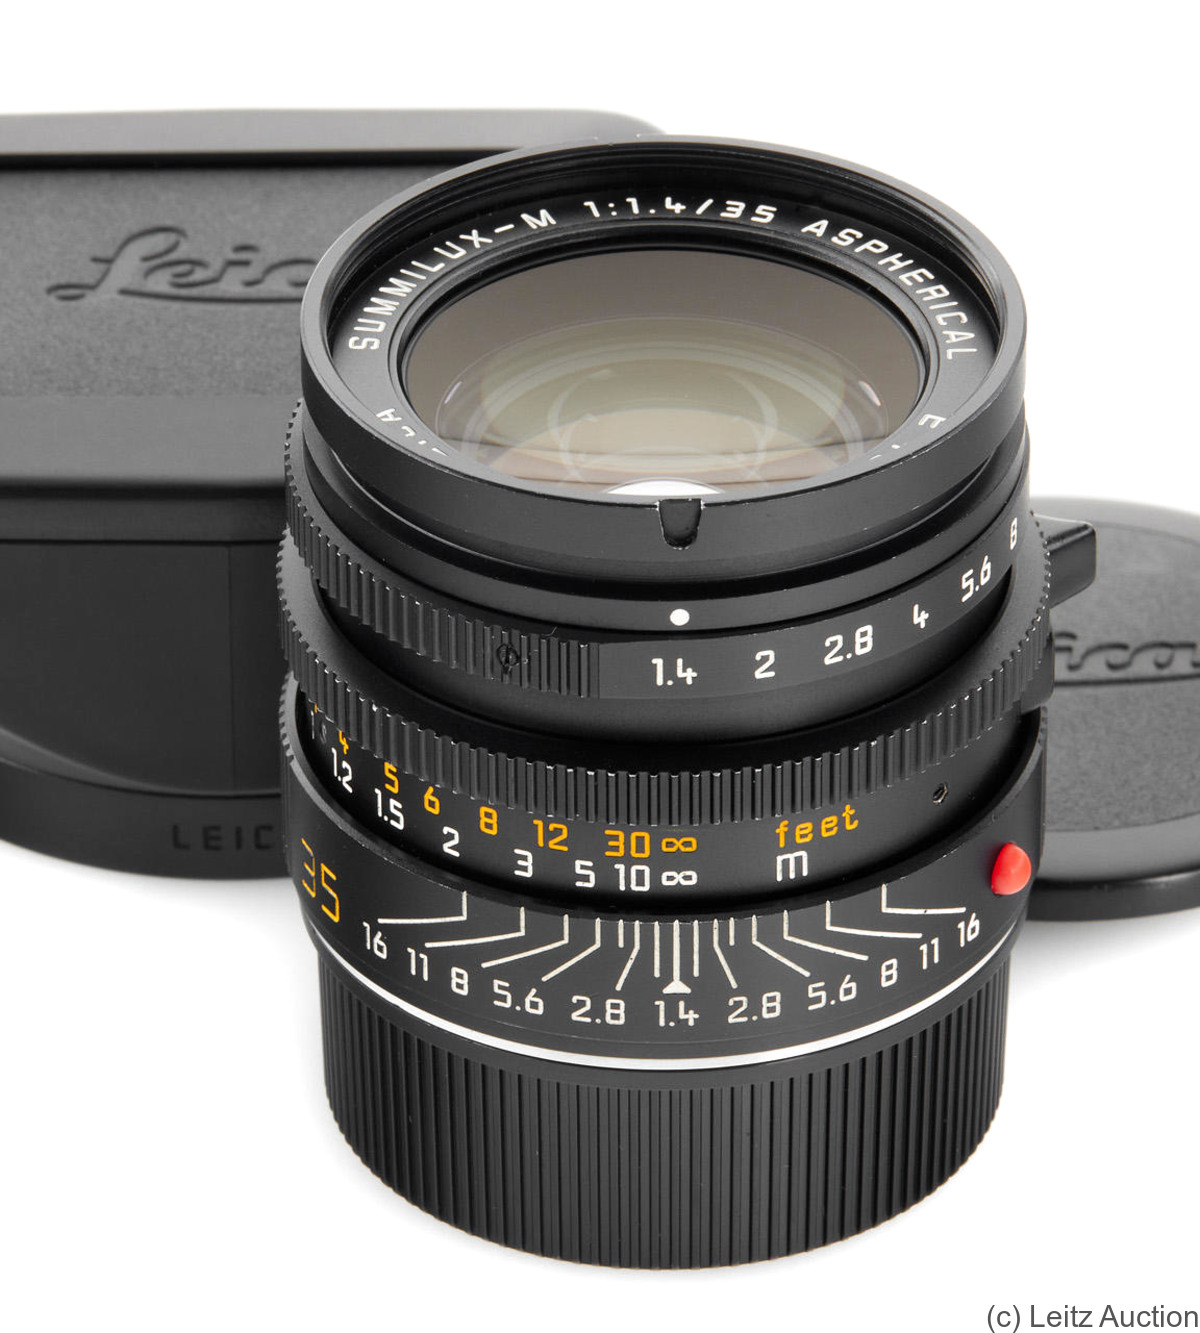 Leitz: 35mm (3.5cm) f1.4 Summilux-M (BM, black, aspherical, 1989) camera